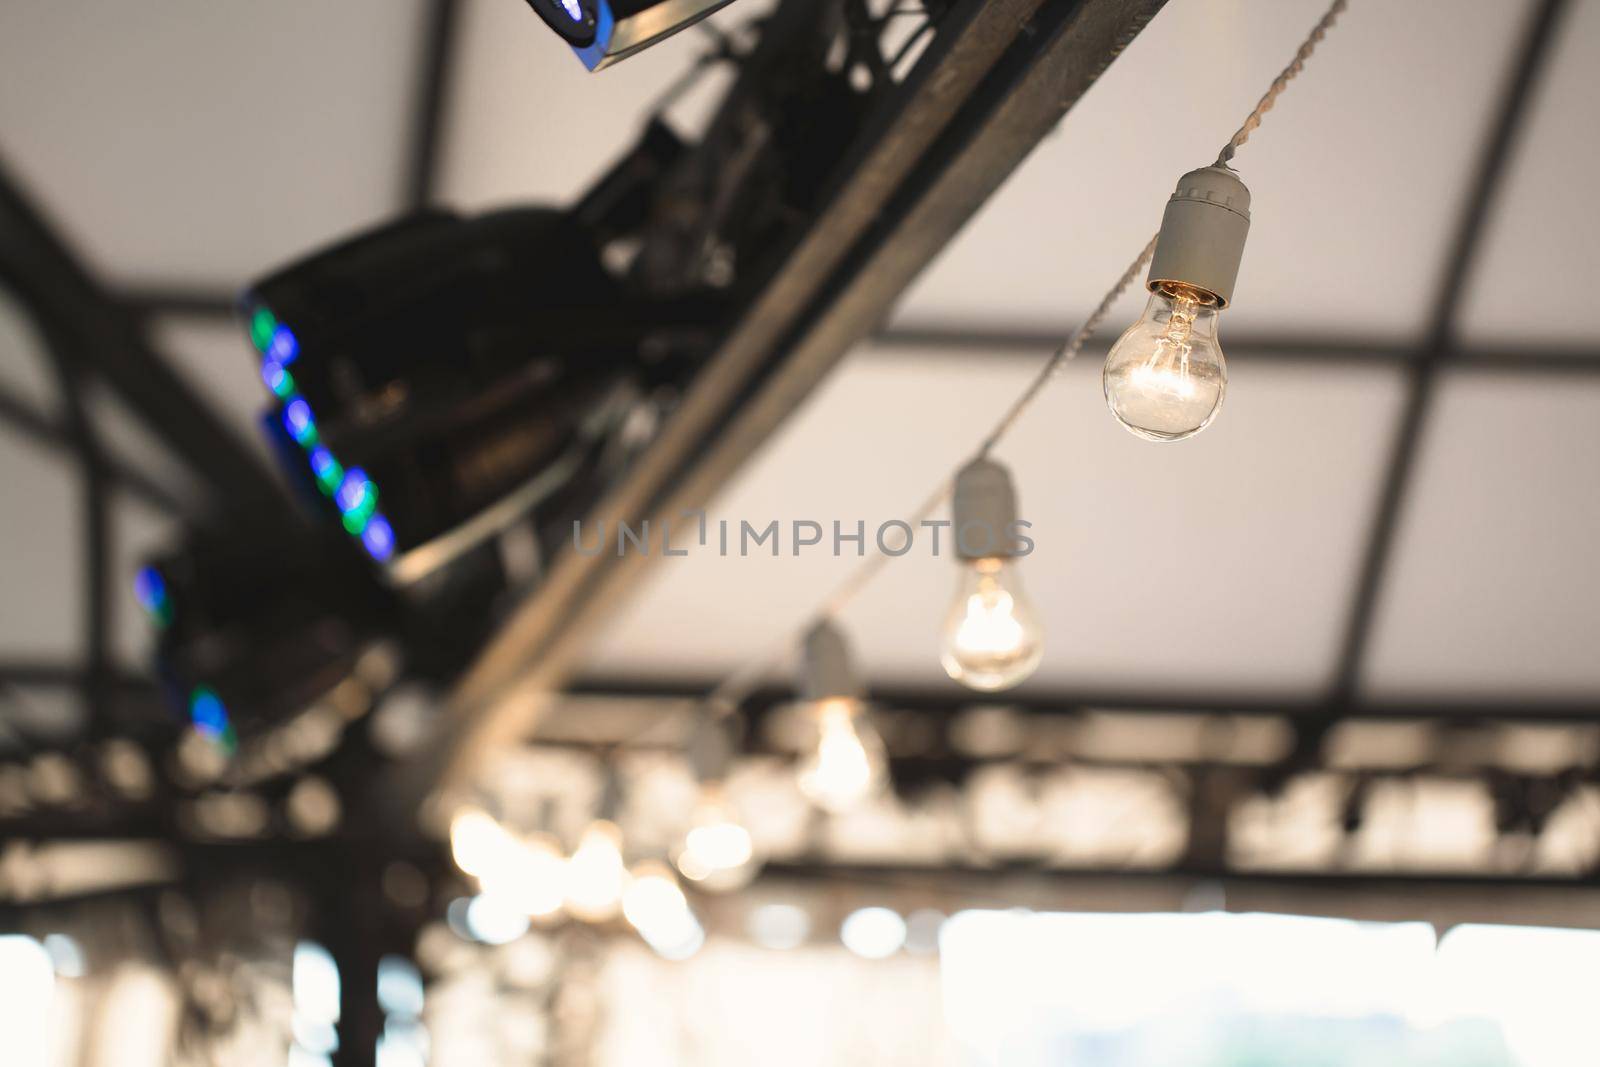 The decor of light bulbs in the restaurant hall.